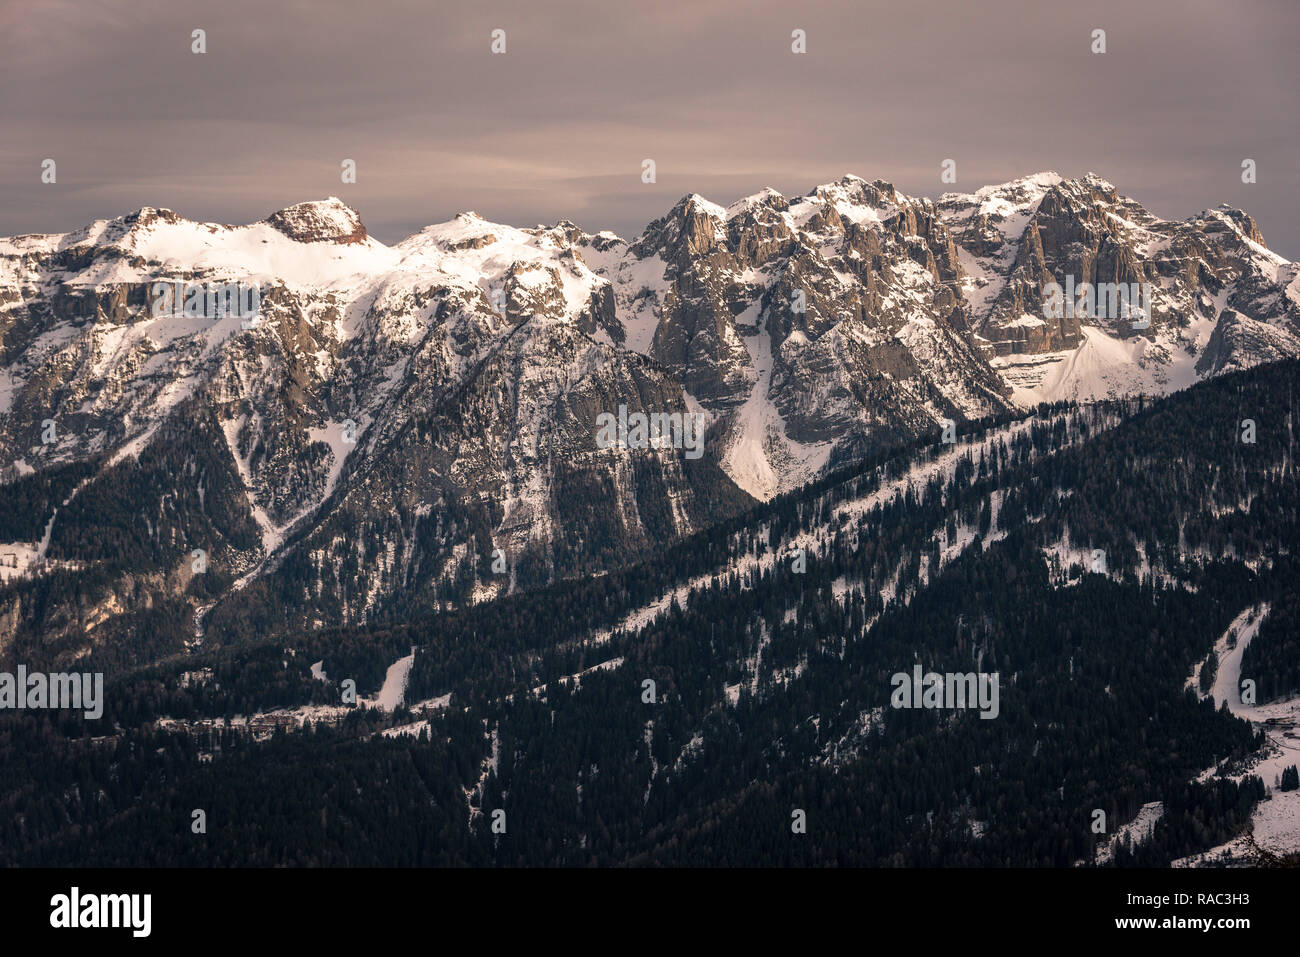 Die Brenta Dolomiten - Dolomiti di Brenta. Berge Panorama. Trentino-südtirol, Südtirol, Trient, Südliche Alpen Rhätischen Alpen, Italien, Europa Stockfoto